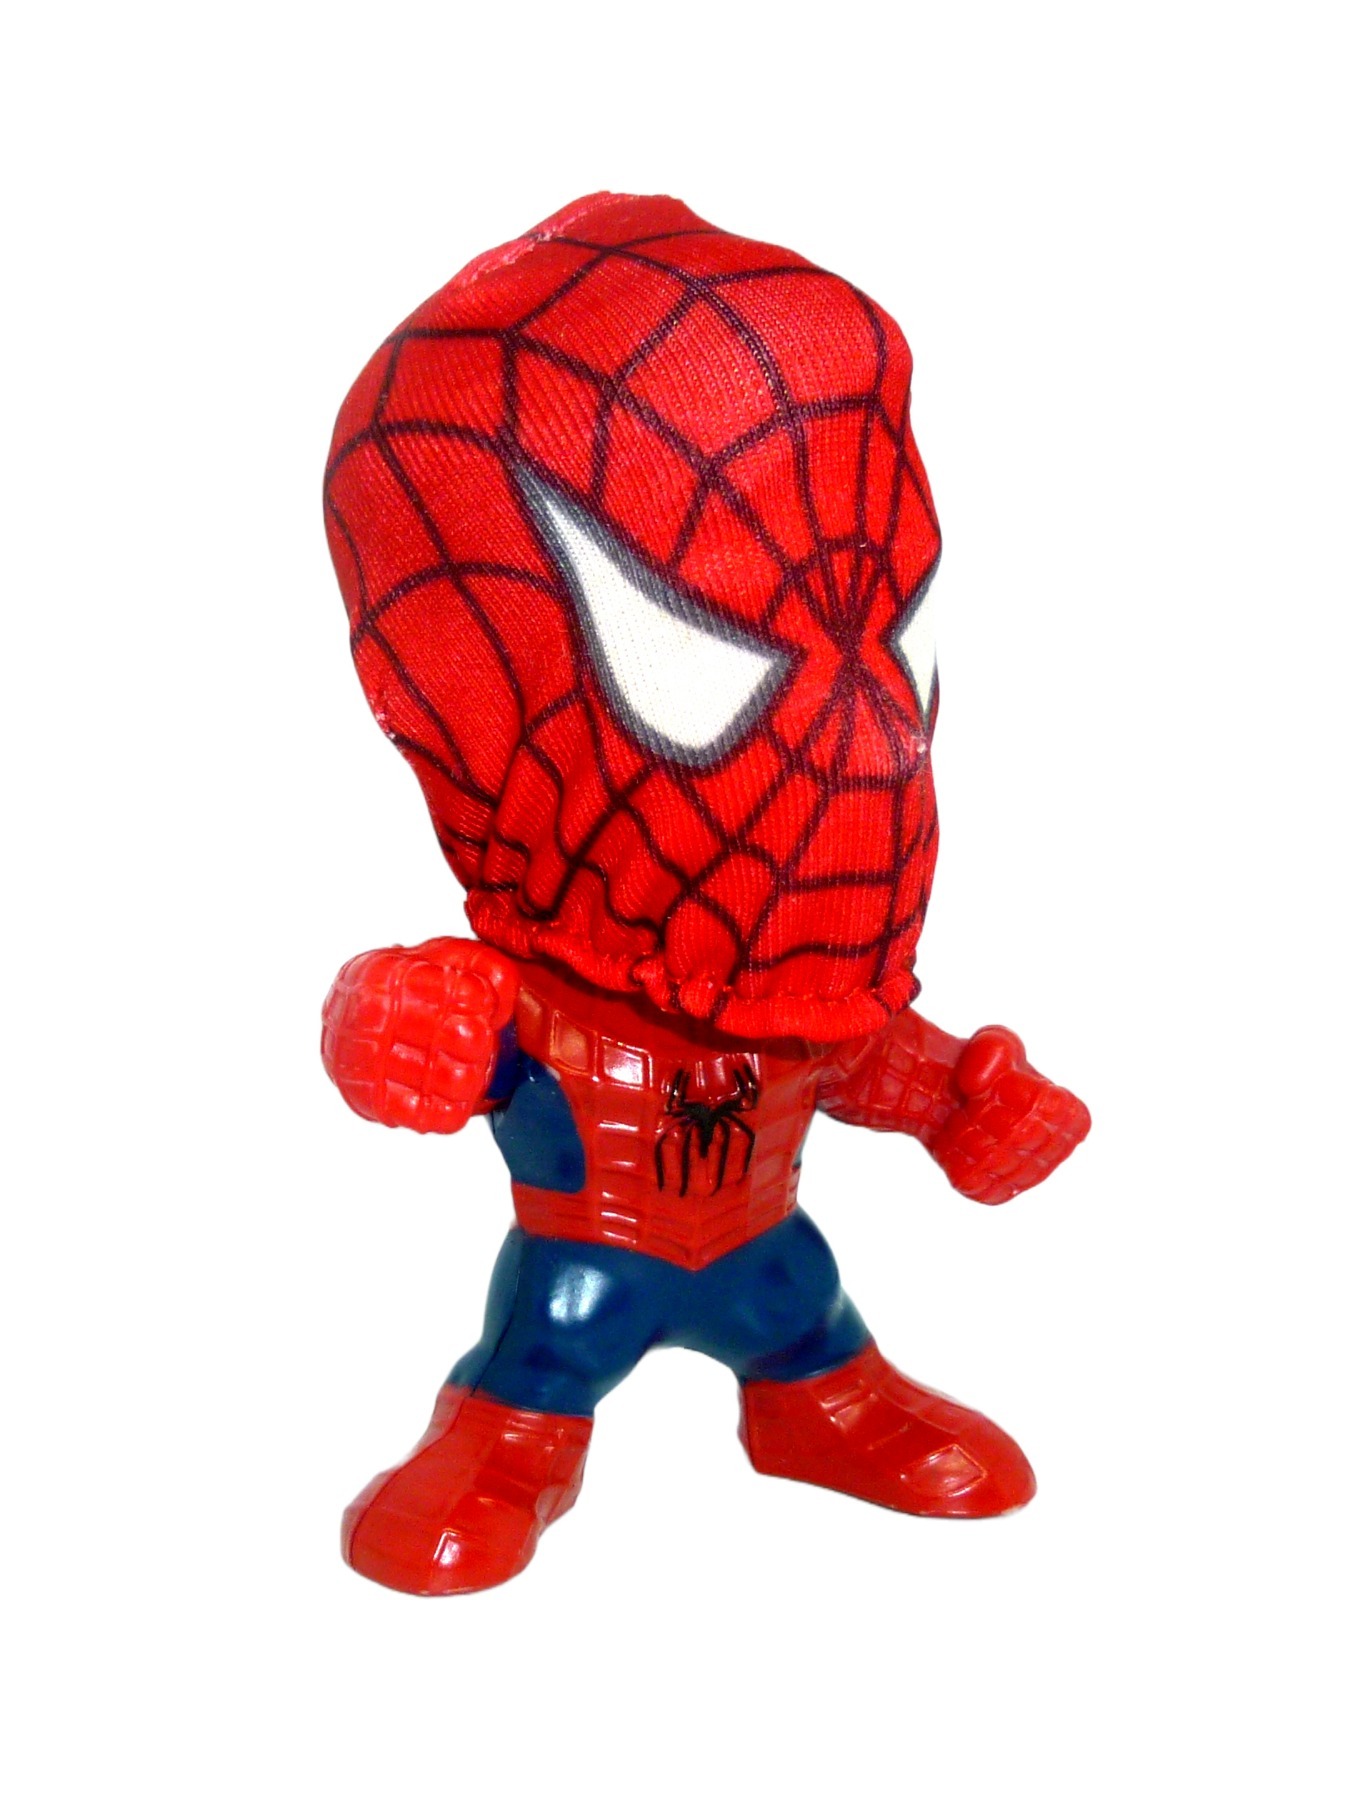 Spider-Man 3 Movie Figure Burger King 2006 3